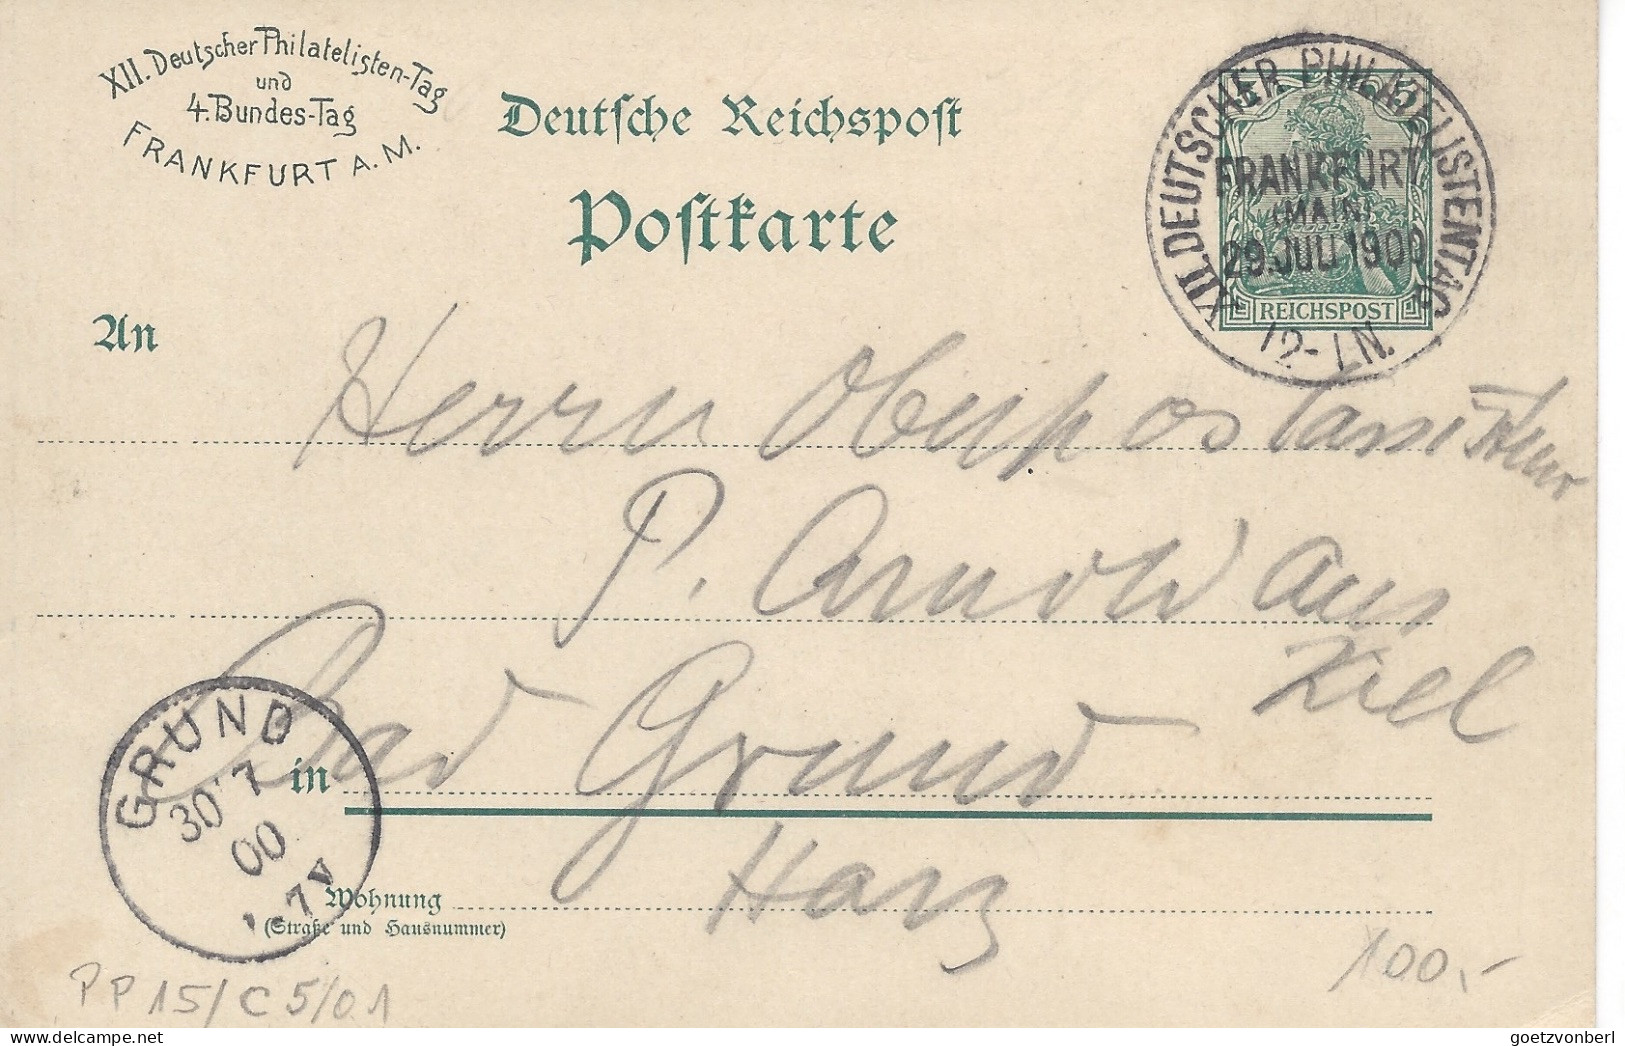 Frankfurt Am Main, XII Deutscher Philatelistentag Und IV Bundestag In 1900 - Cartes Postales